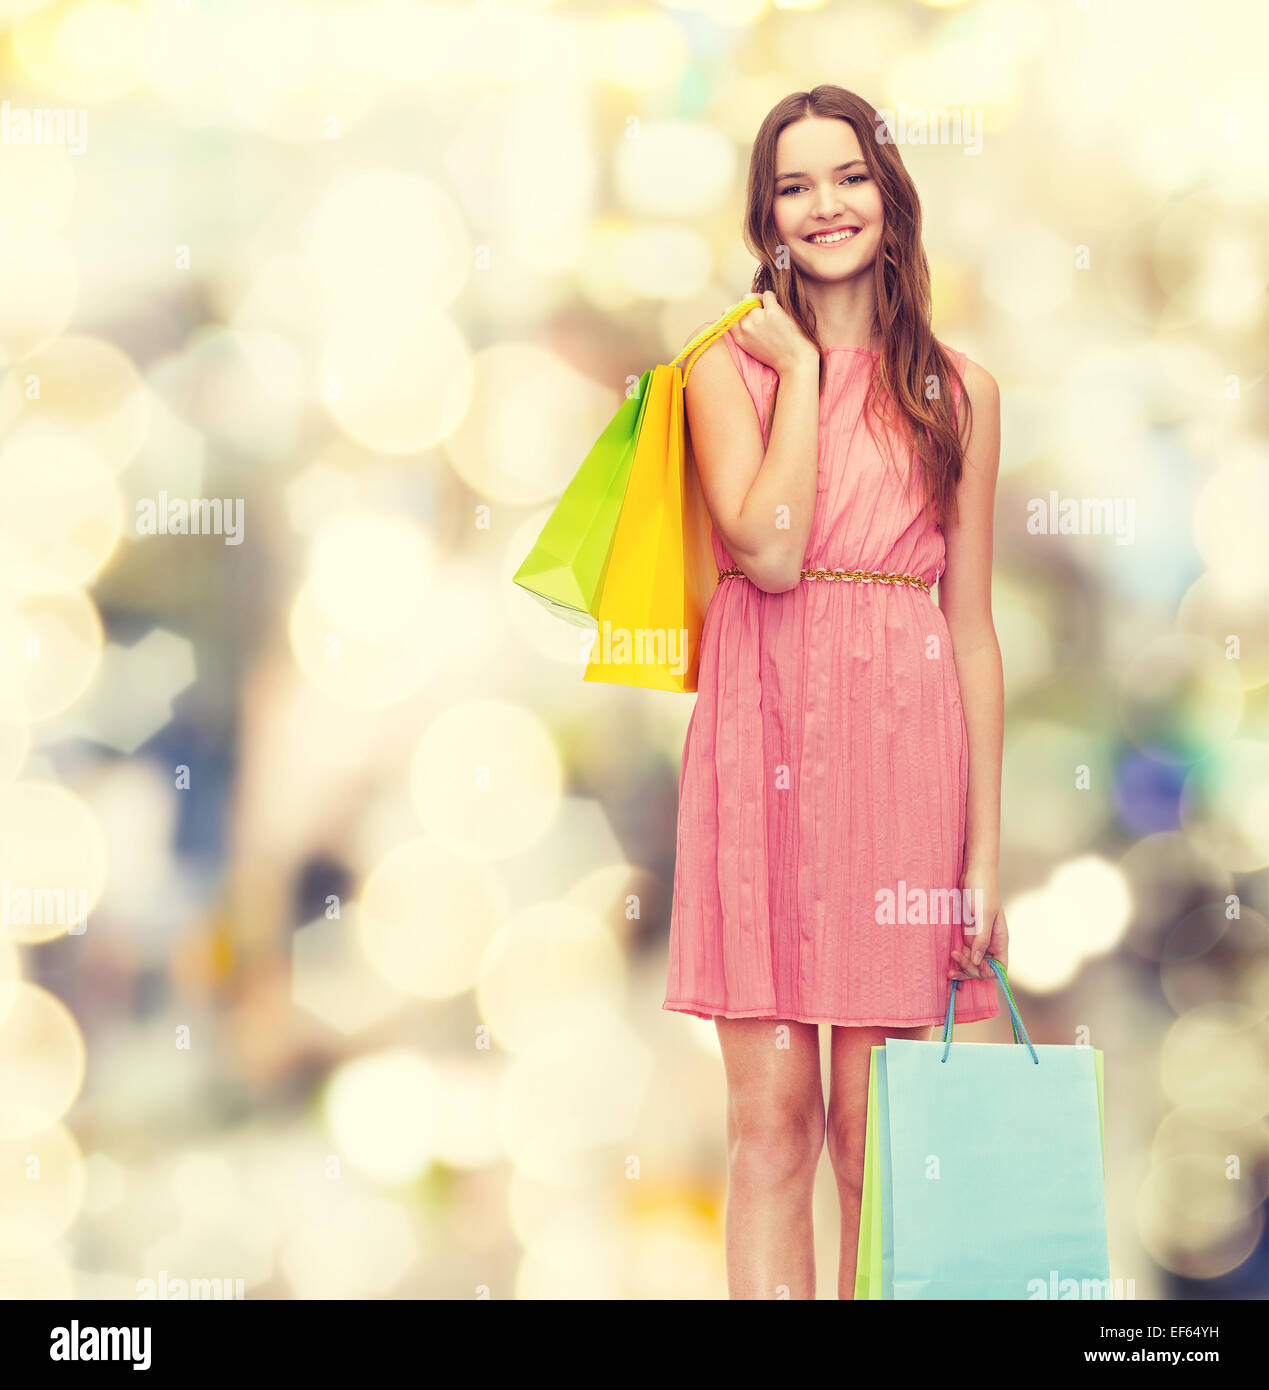 Smiling woman in dress avec de nombreux sacs de magasinage Banque D'Images